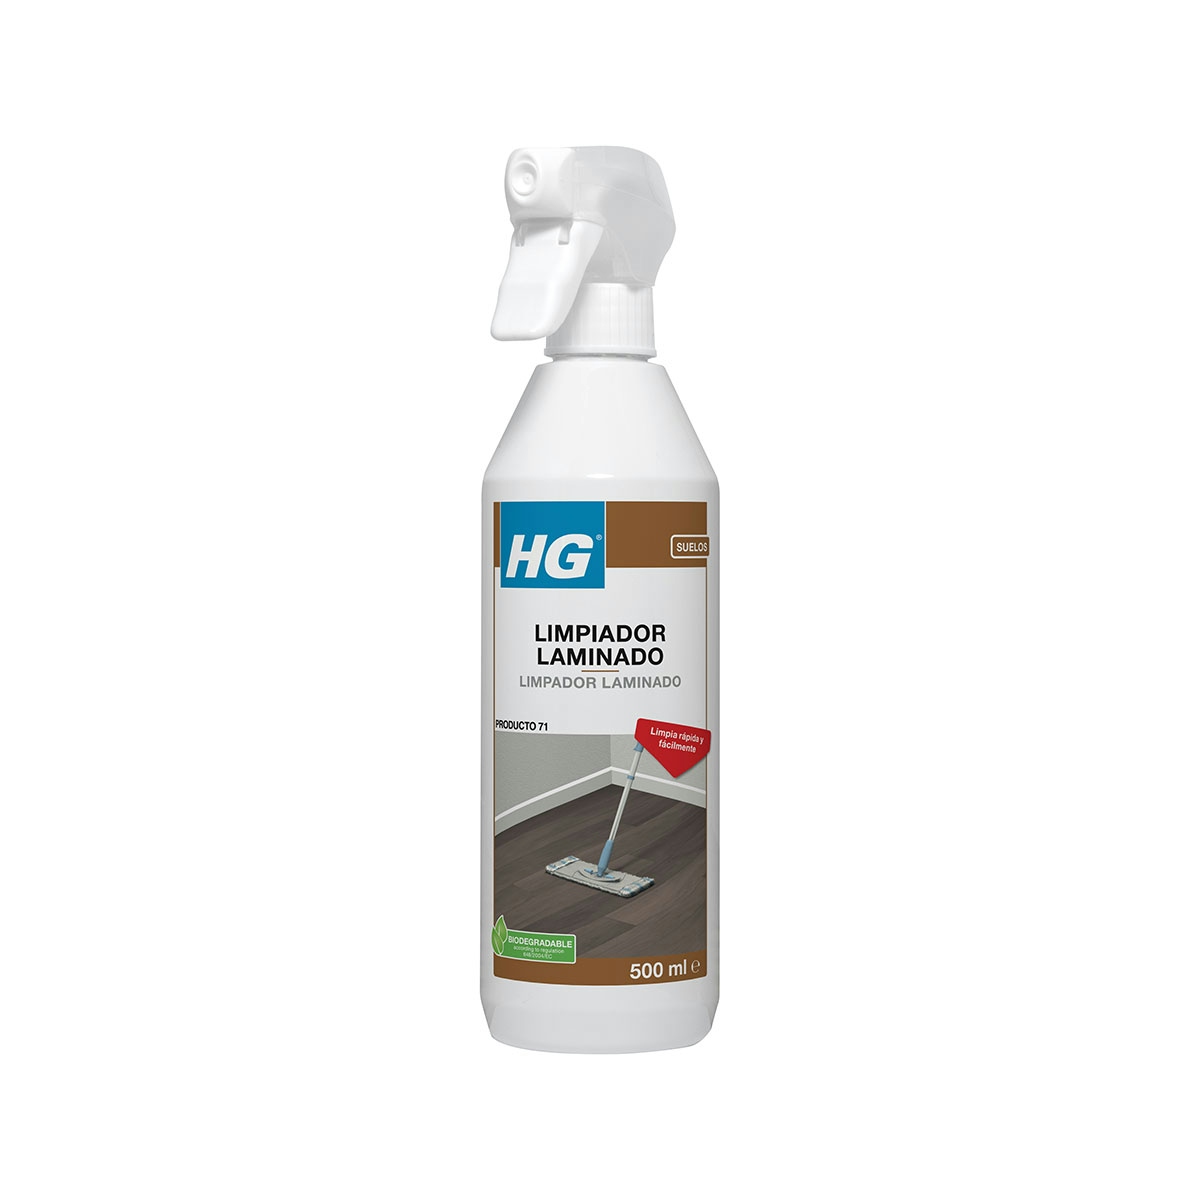 HG limpiador laminado (producto 71)